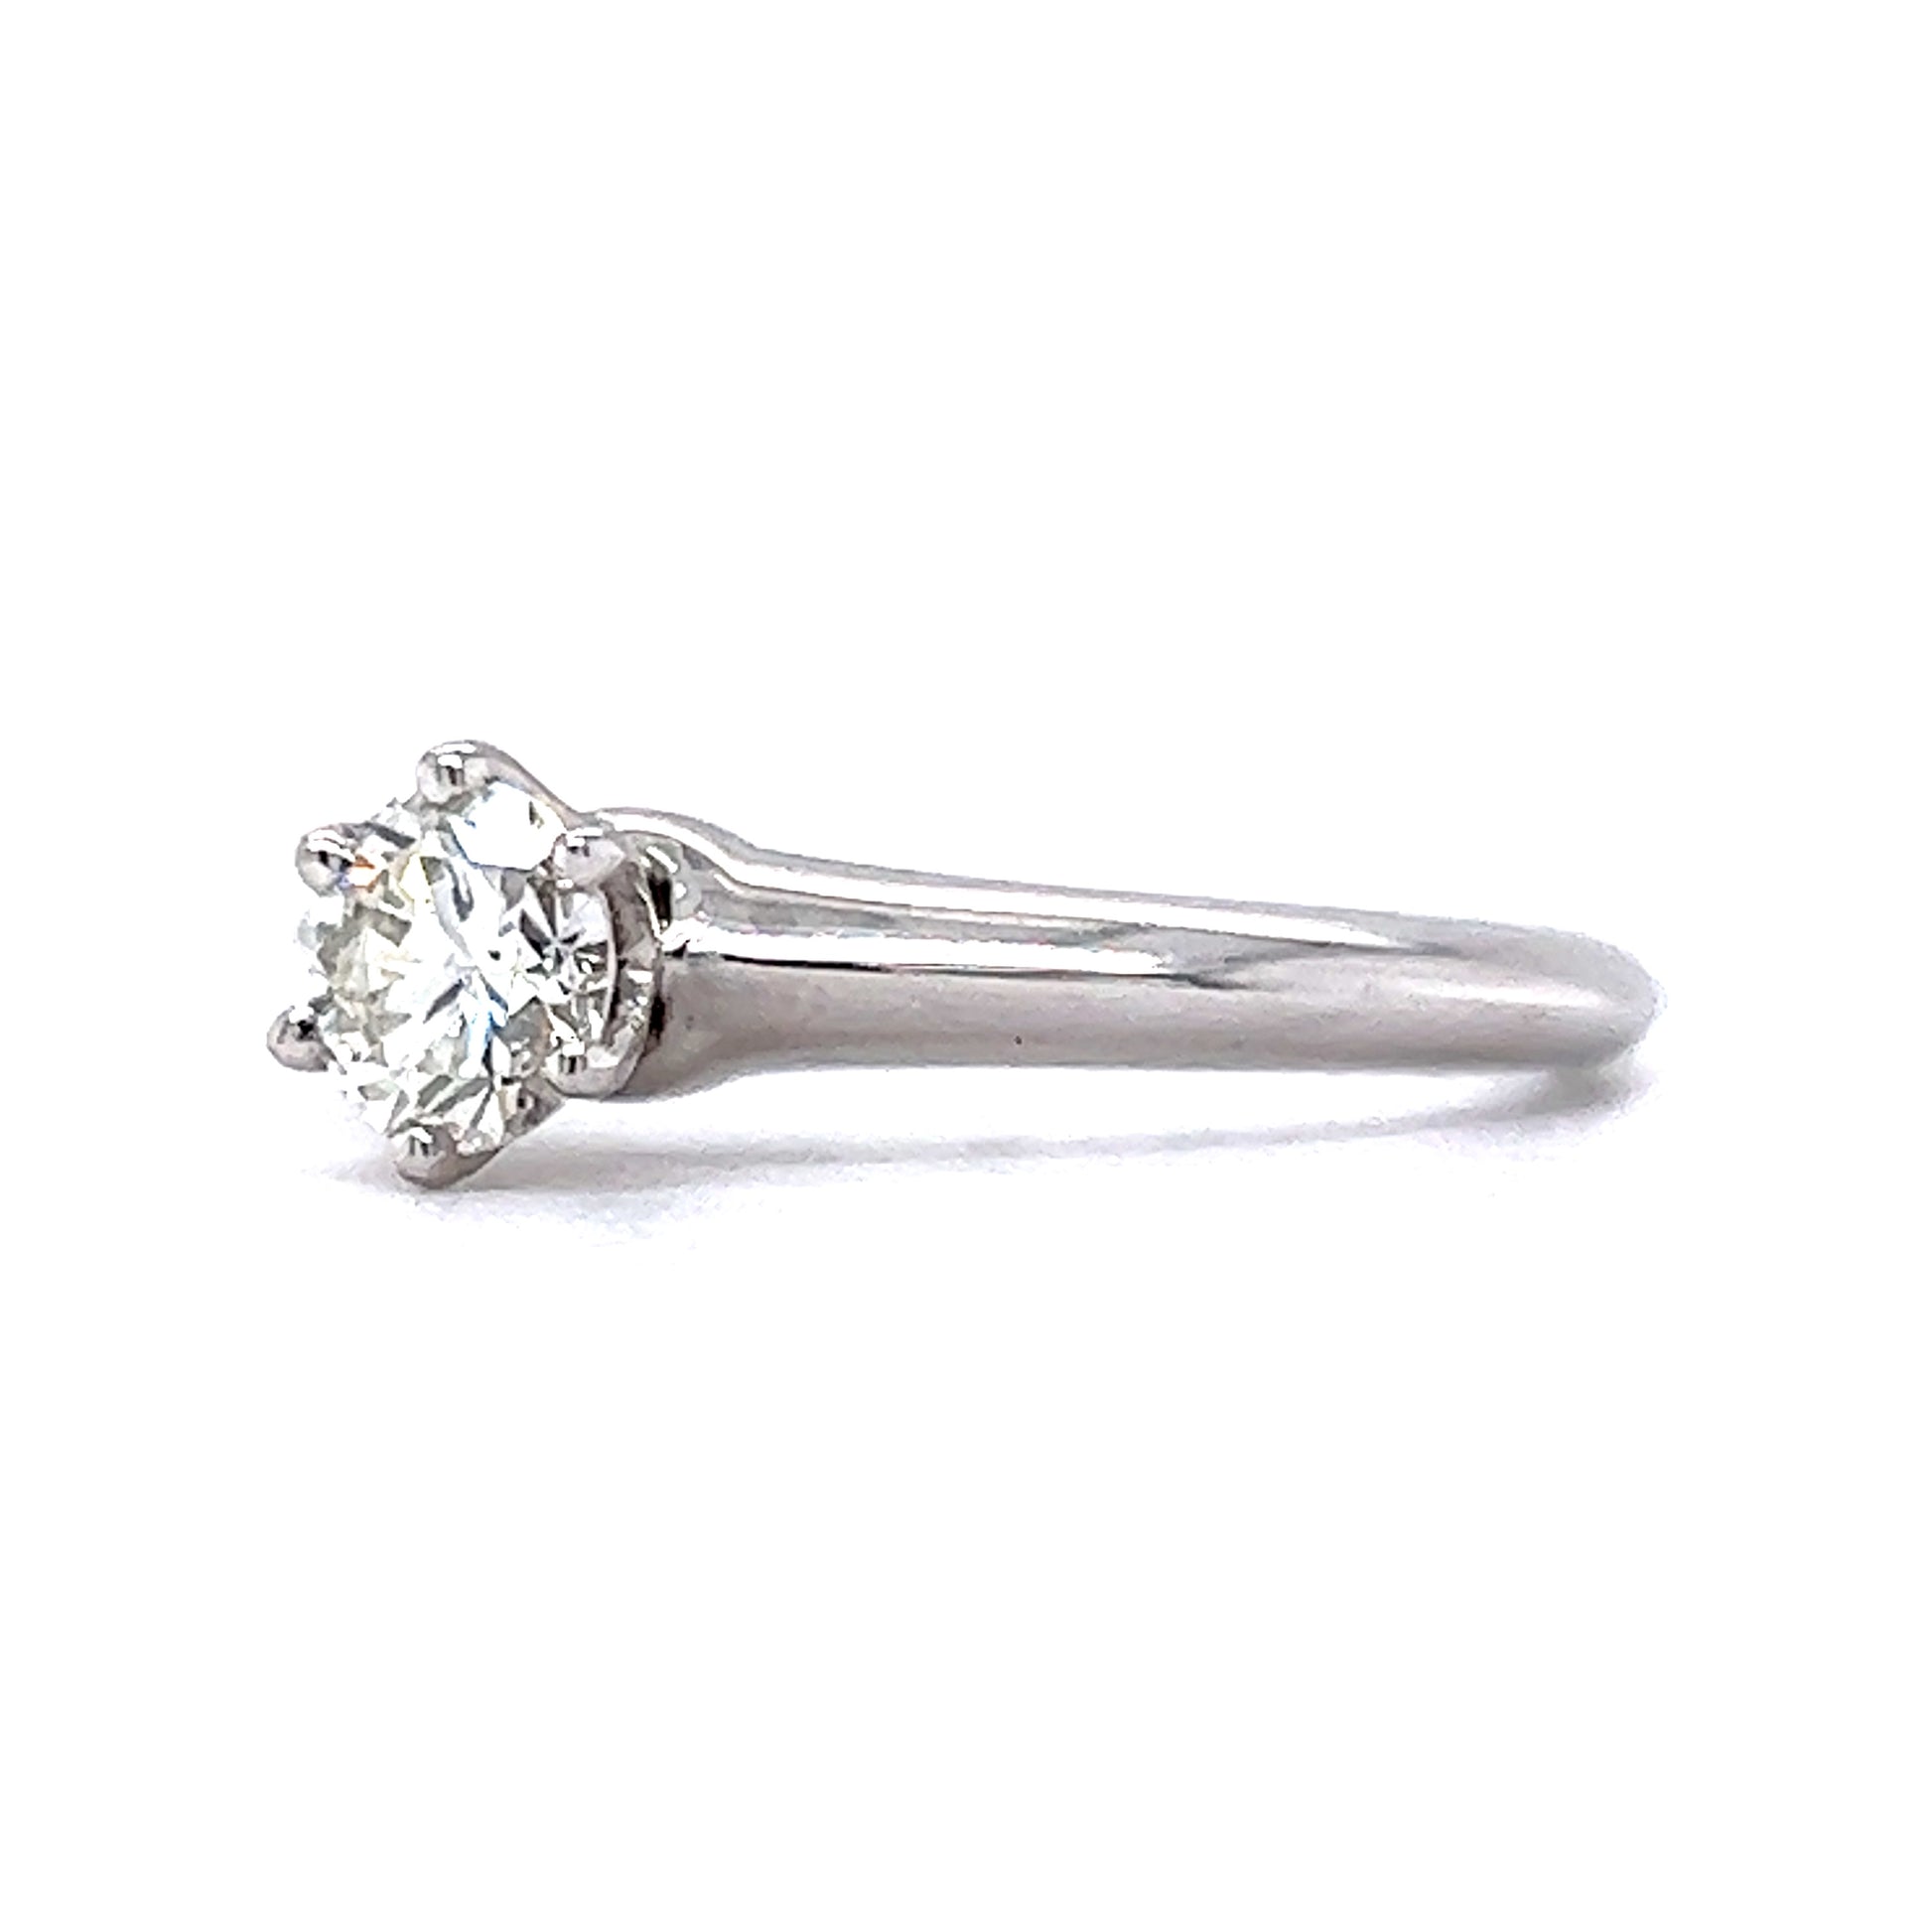 .62 Solitaire Diamond Engagement Ring in Platinum